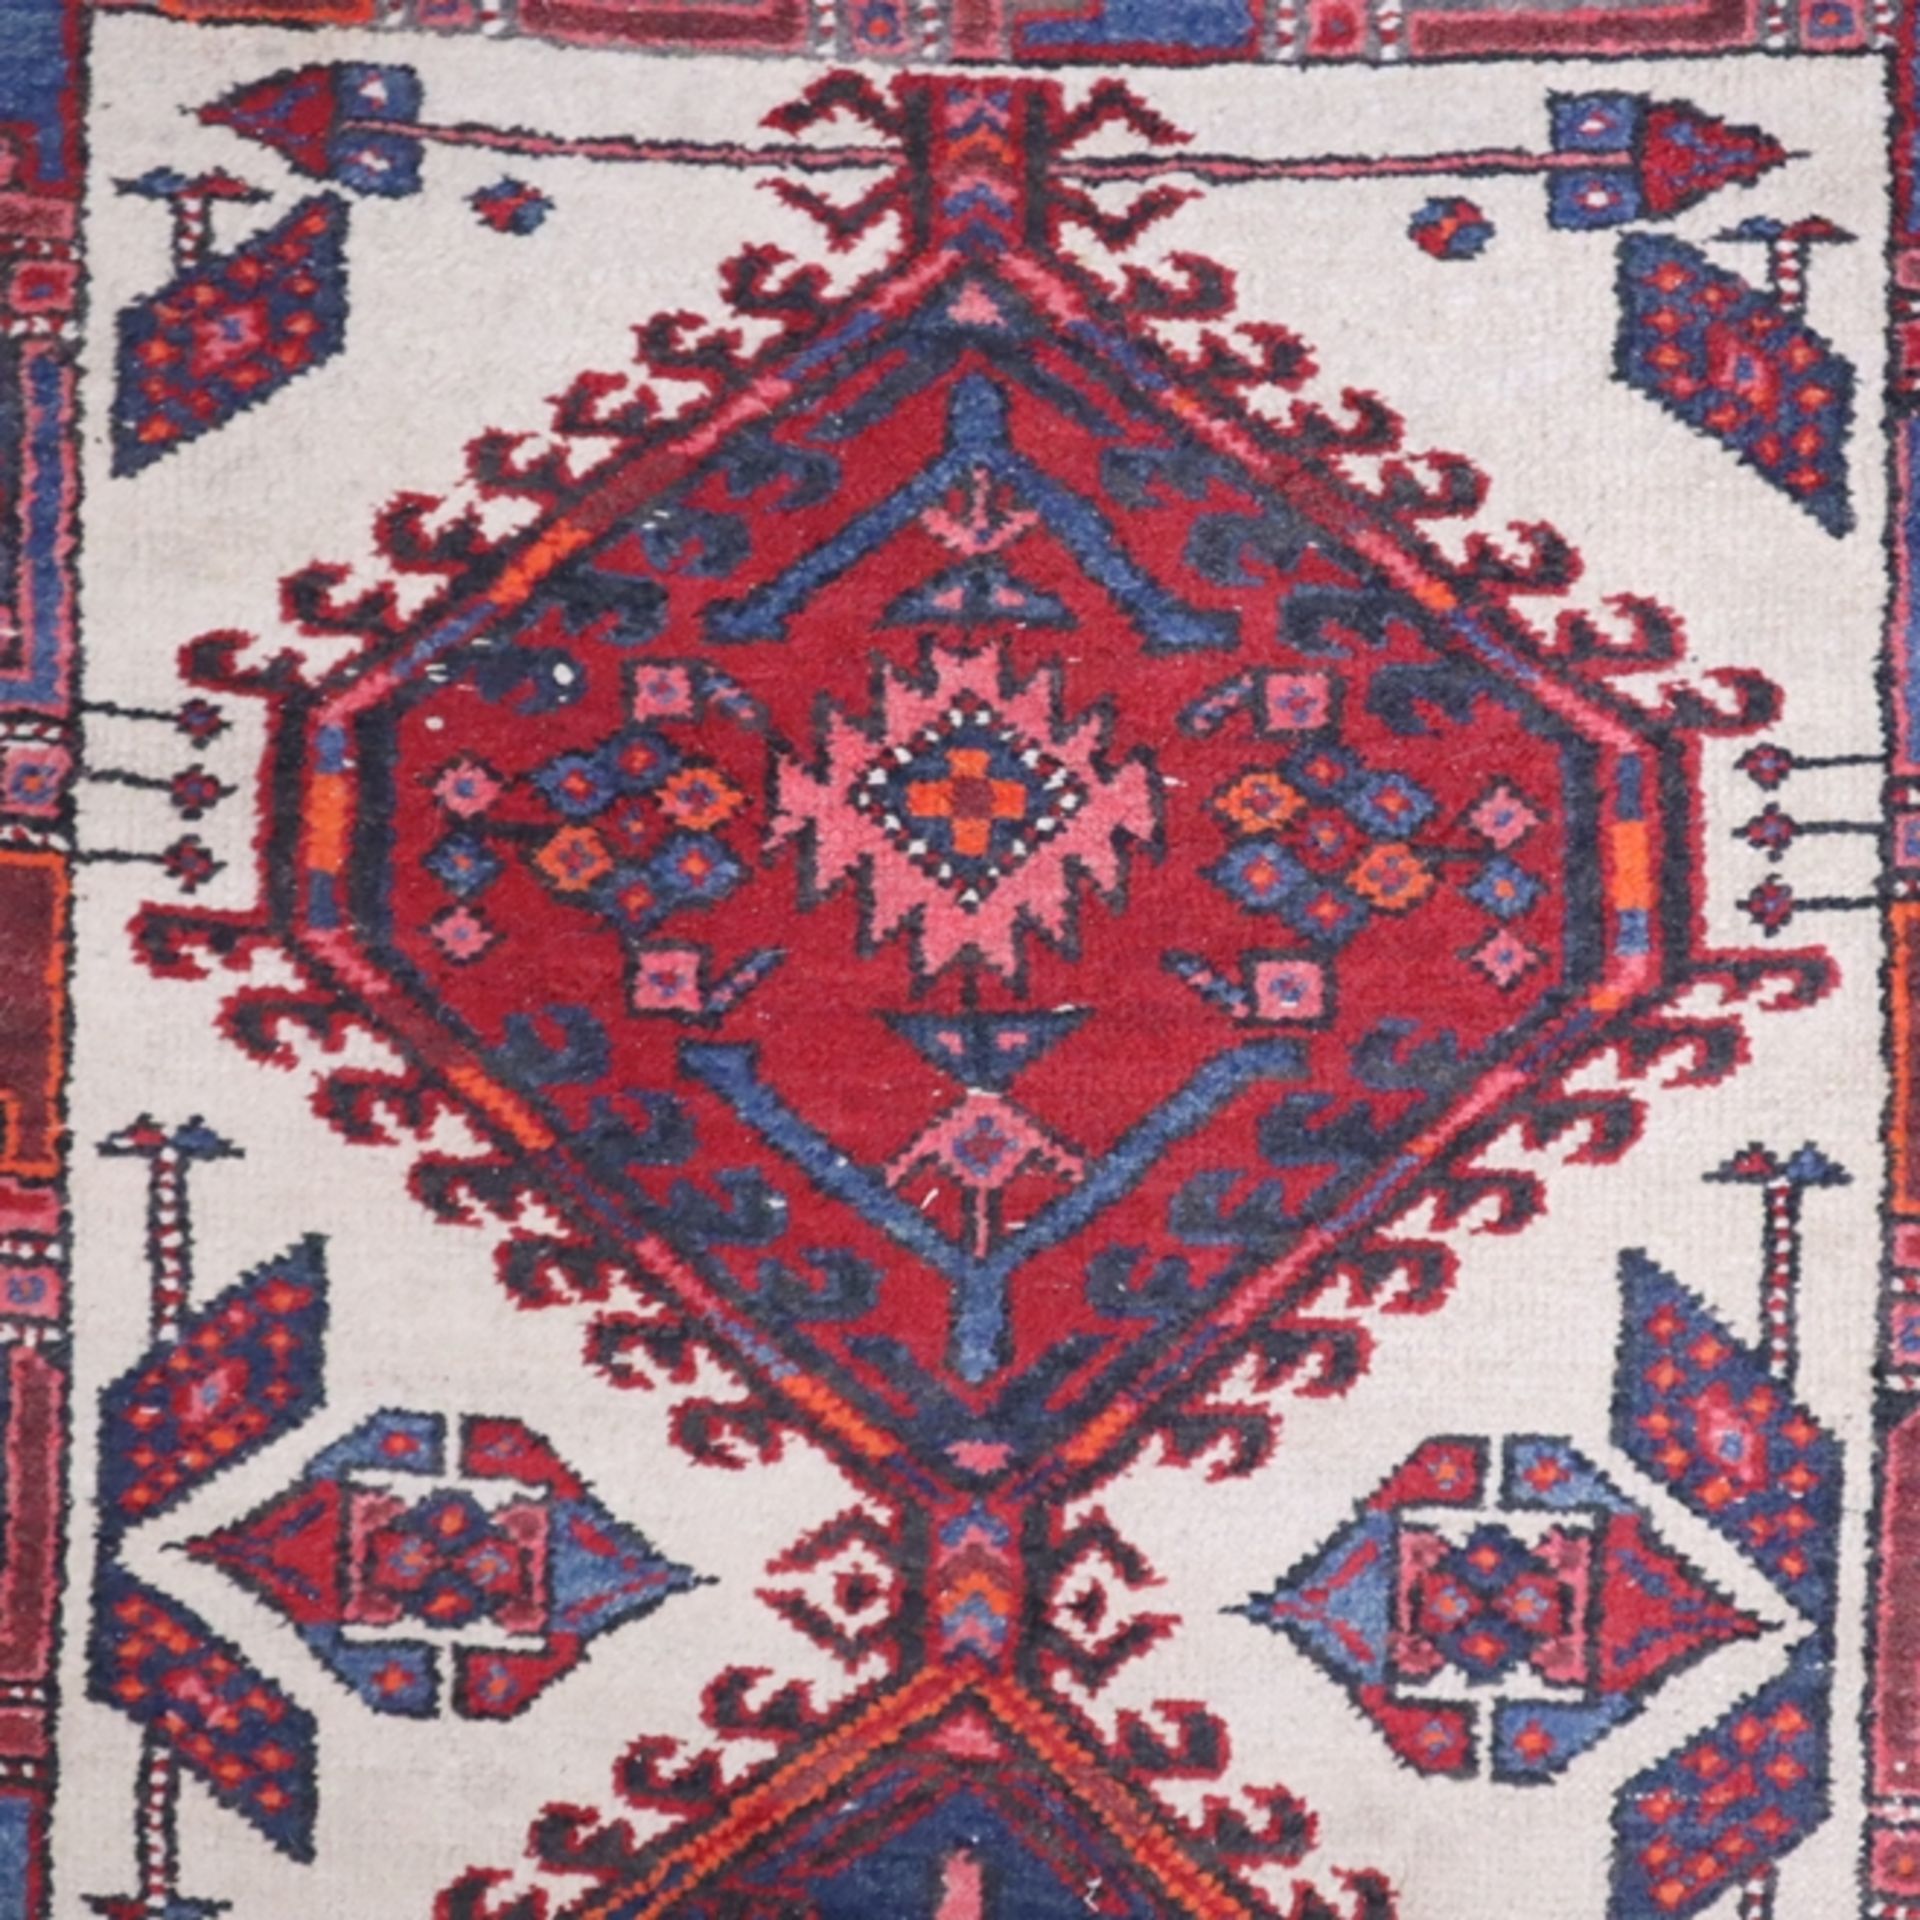 Hamadan - Wolle auf Baumwolle, rot/blau//weiß, Mittelfeld mit drei Medaillons, Gebrauchsspuren, tei - Bild 5 aus 7